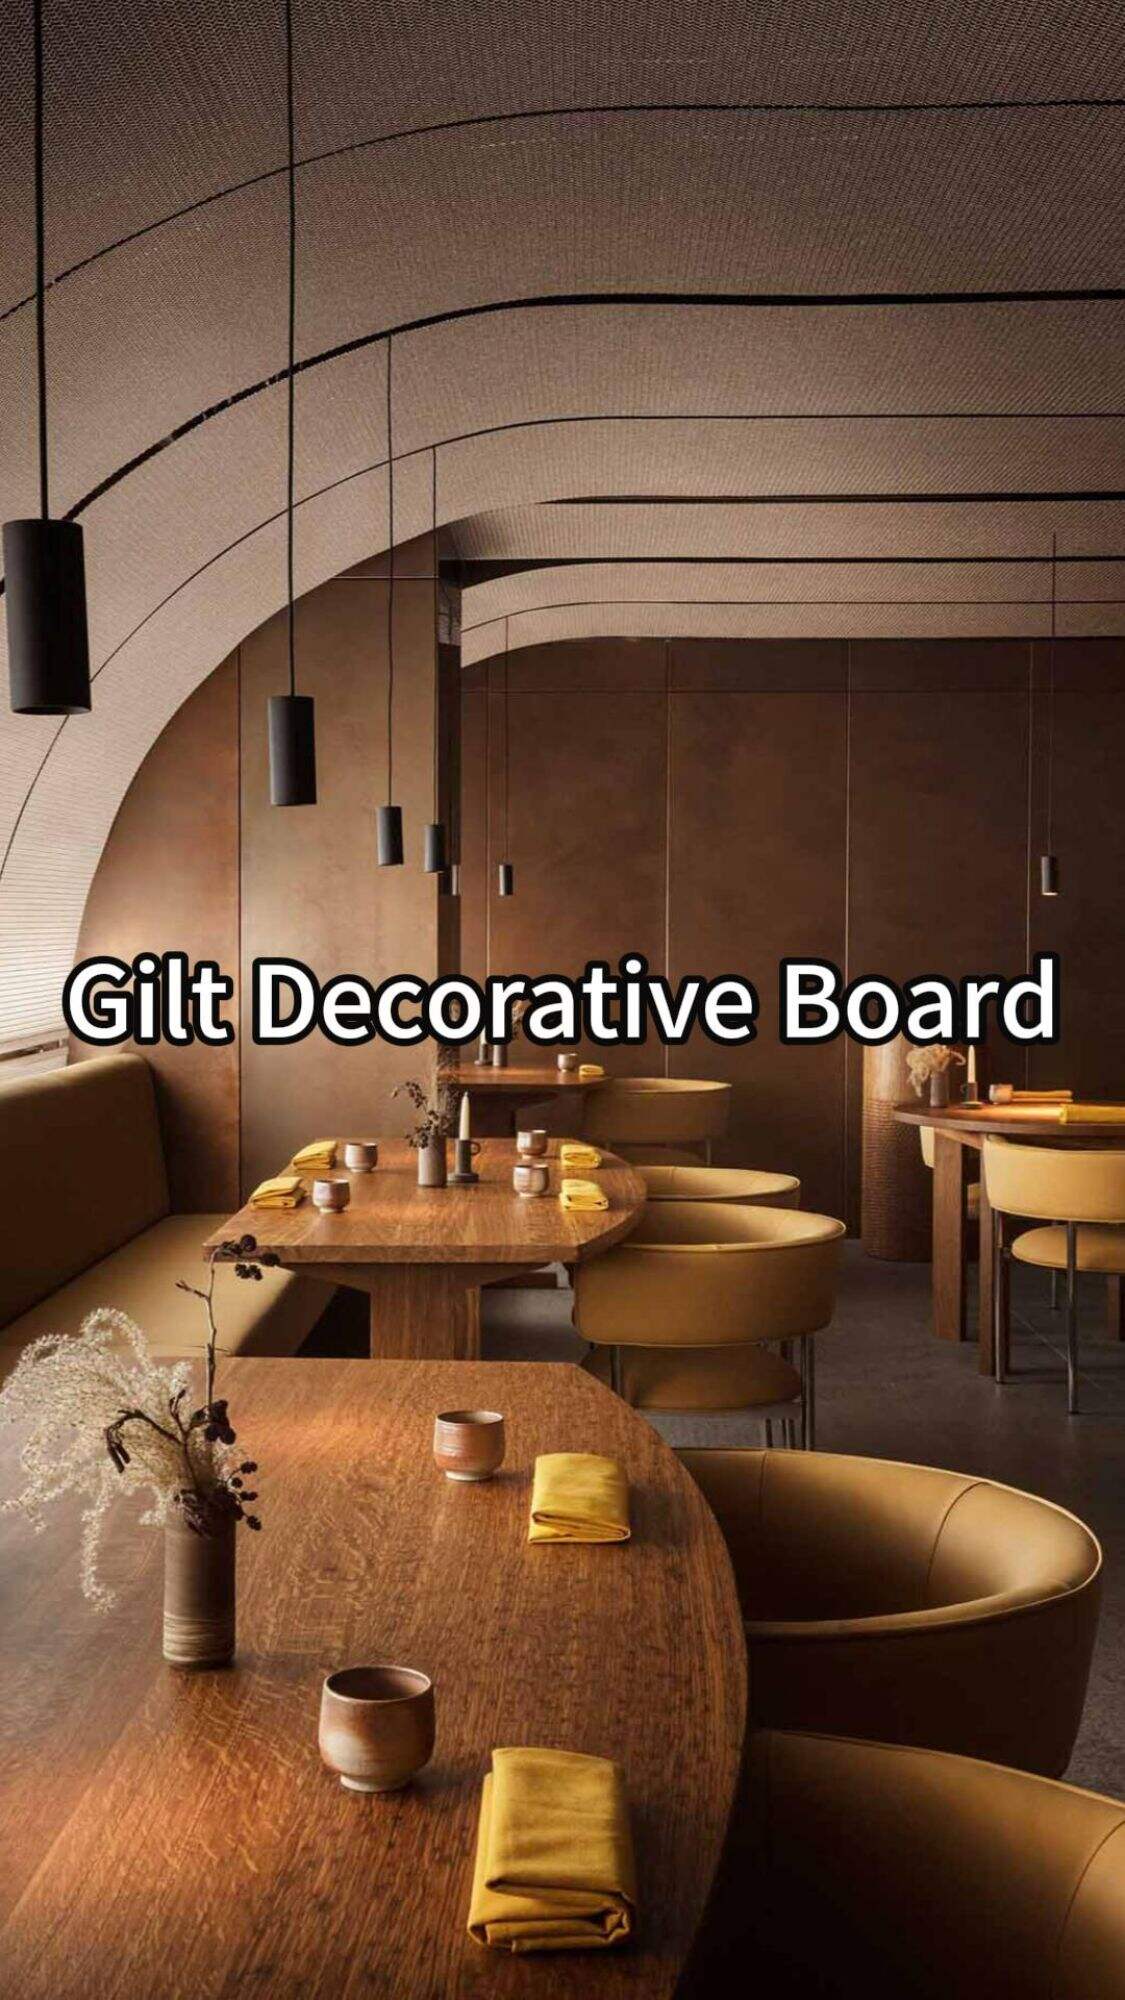 Designer's favorite material | Gilt decorative board idea